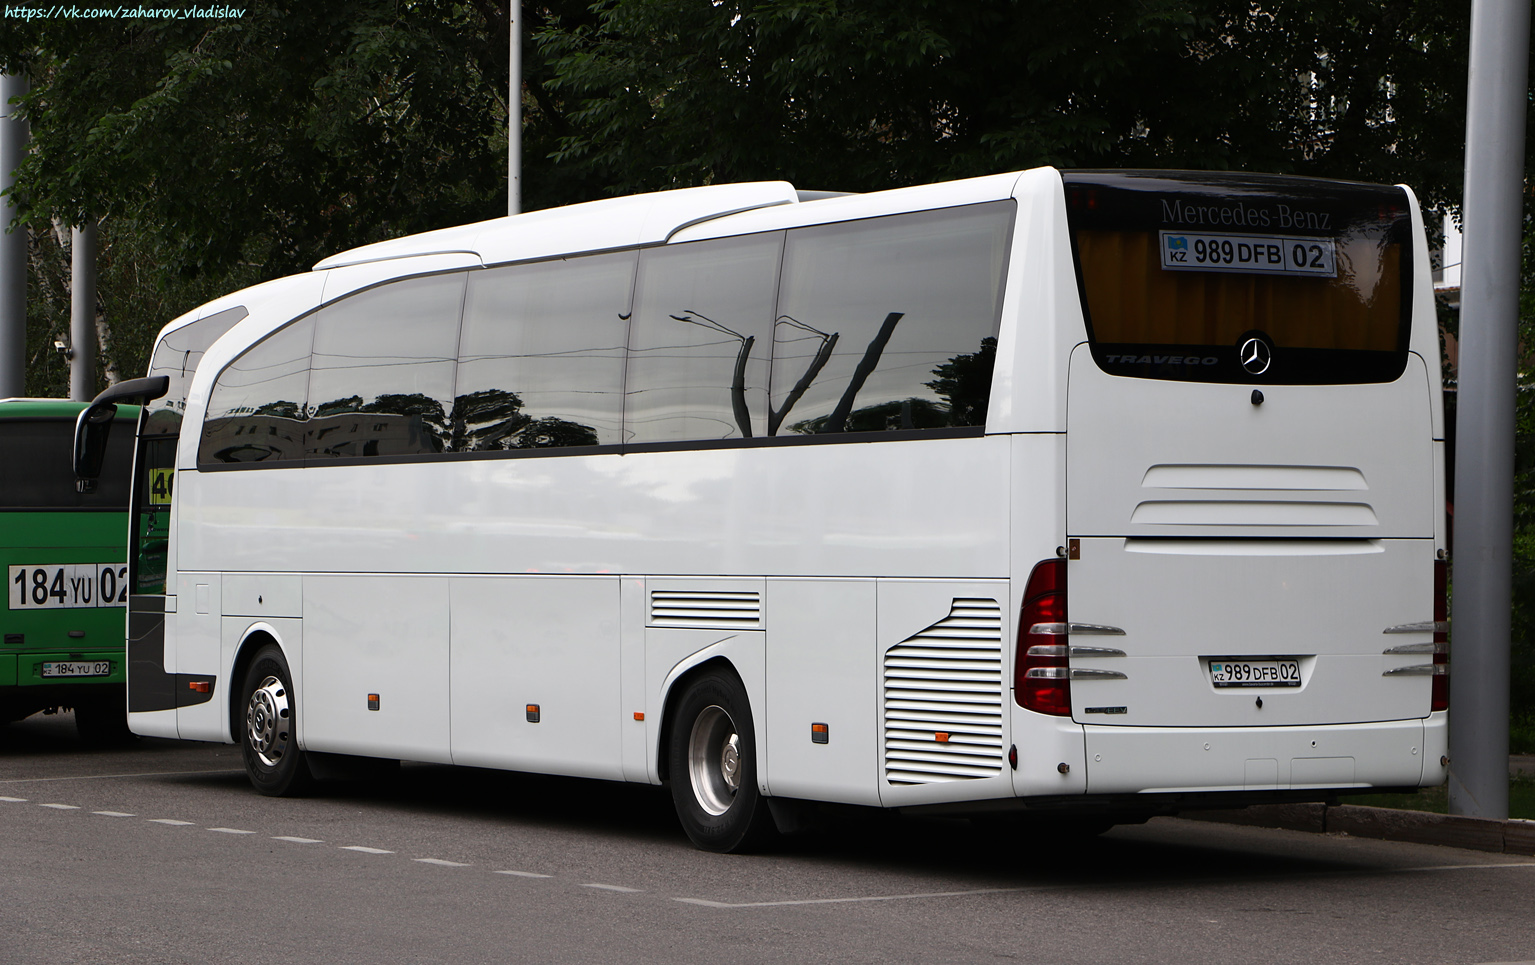 Ałmaty, Mercedes-Benz Travego II 15RHD facelift Nr 989 DFB 02